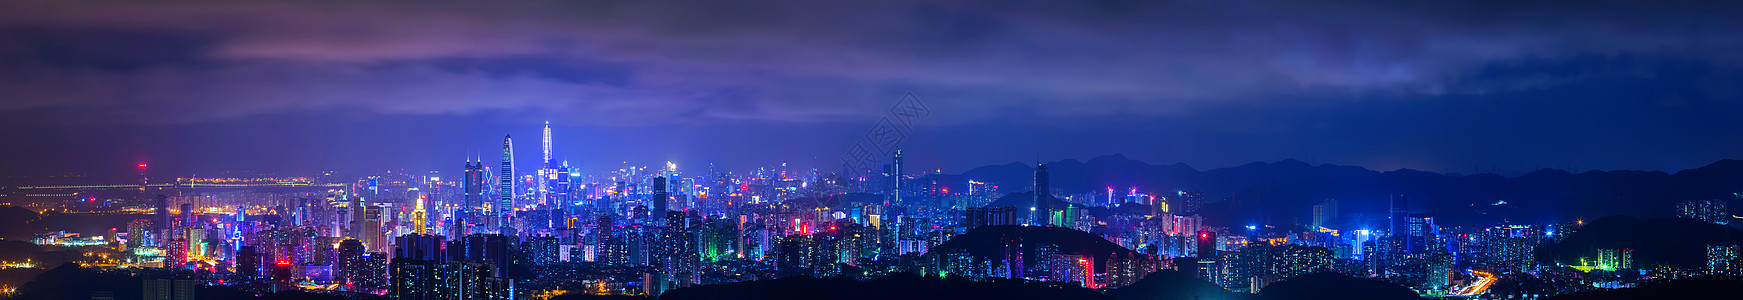 平安大厦深圳城市夜景背景